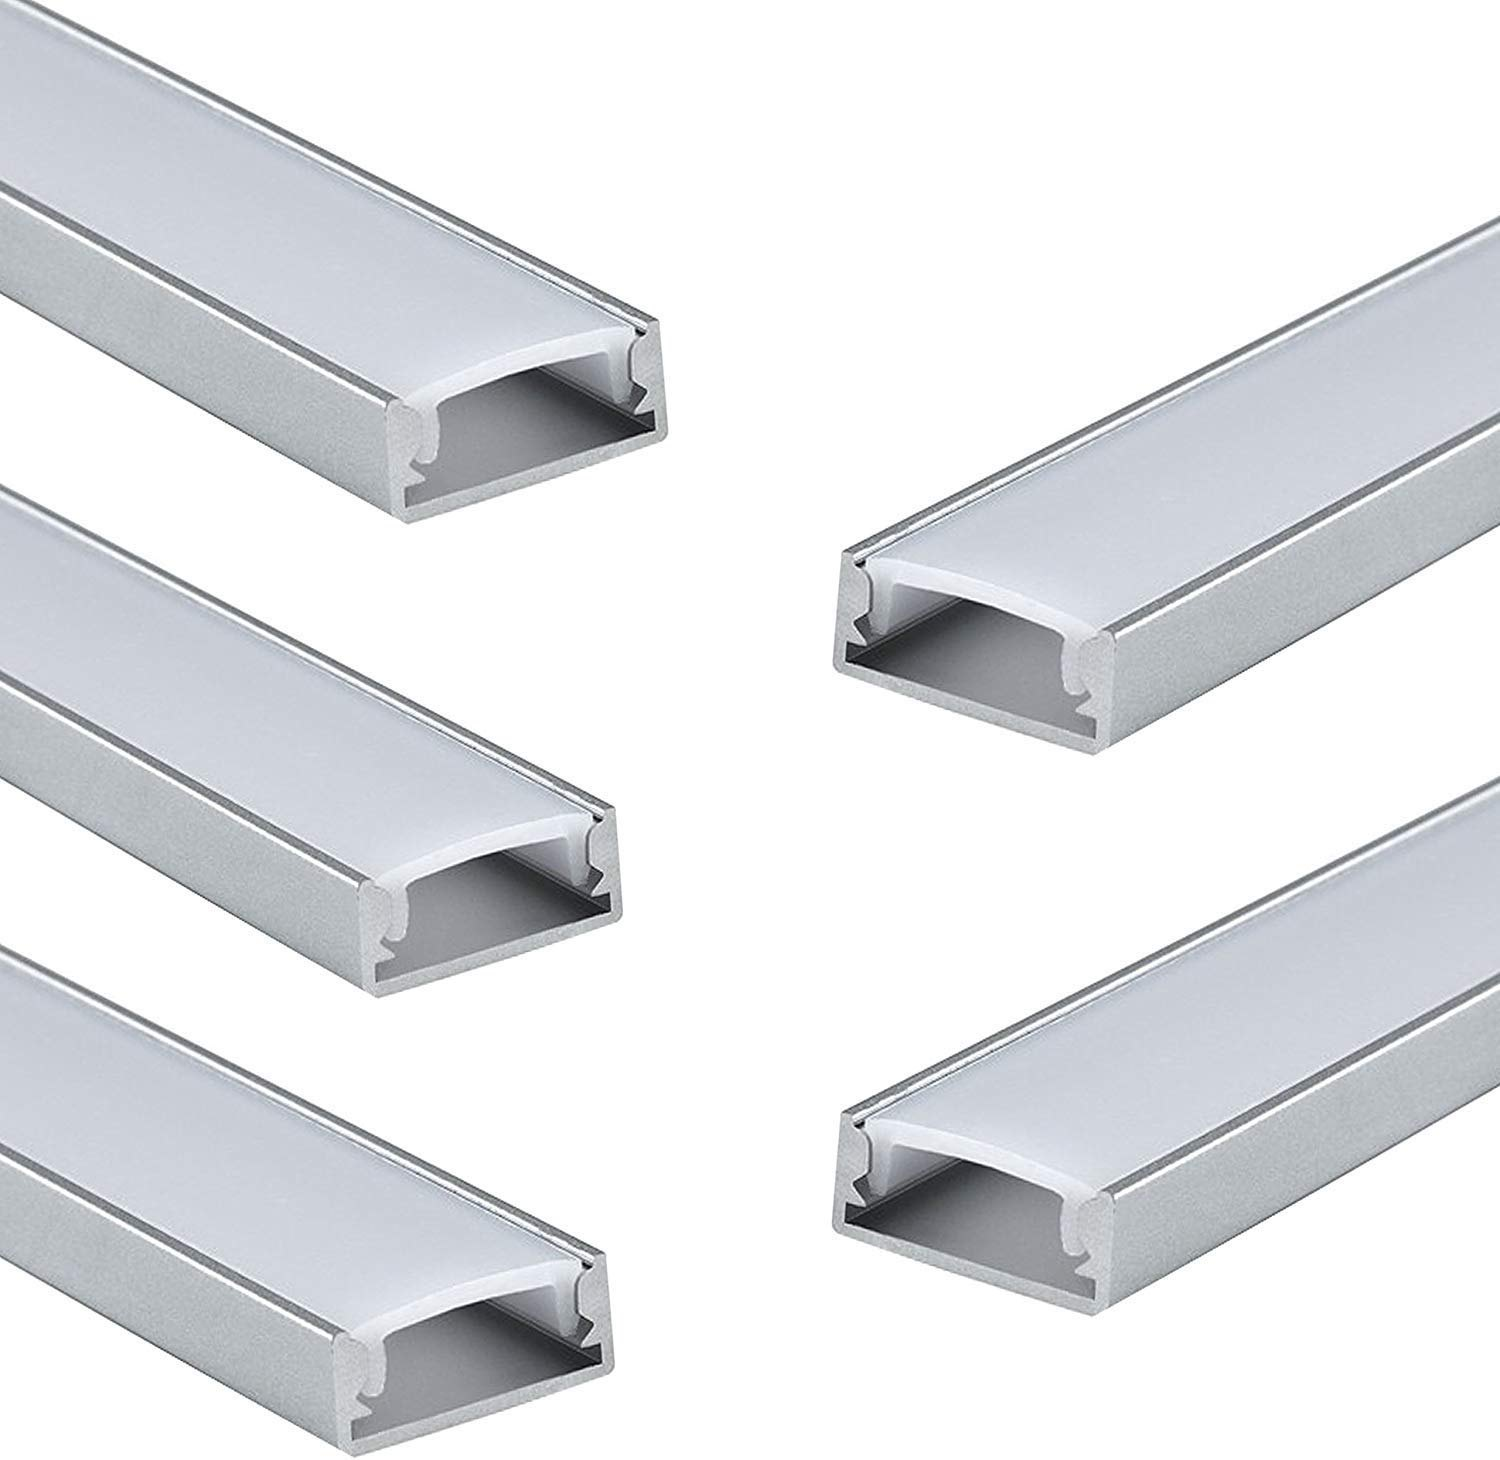 Extrusion aluminium profile for LED light (6)3gc